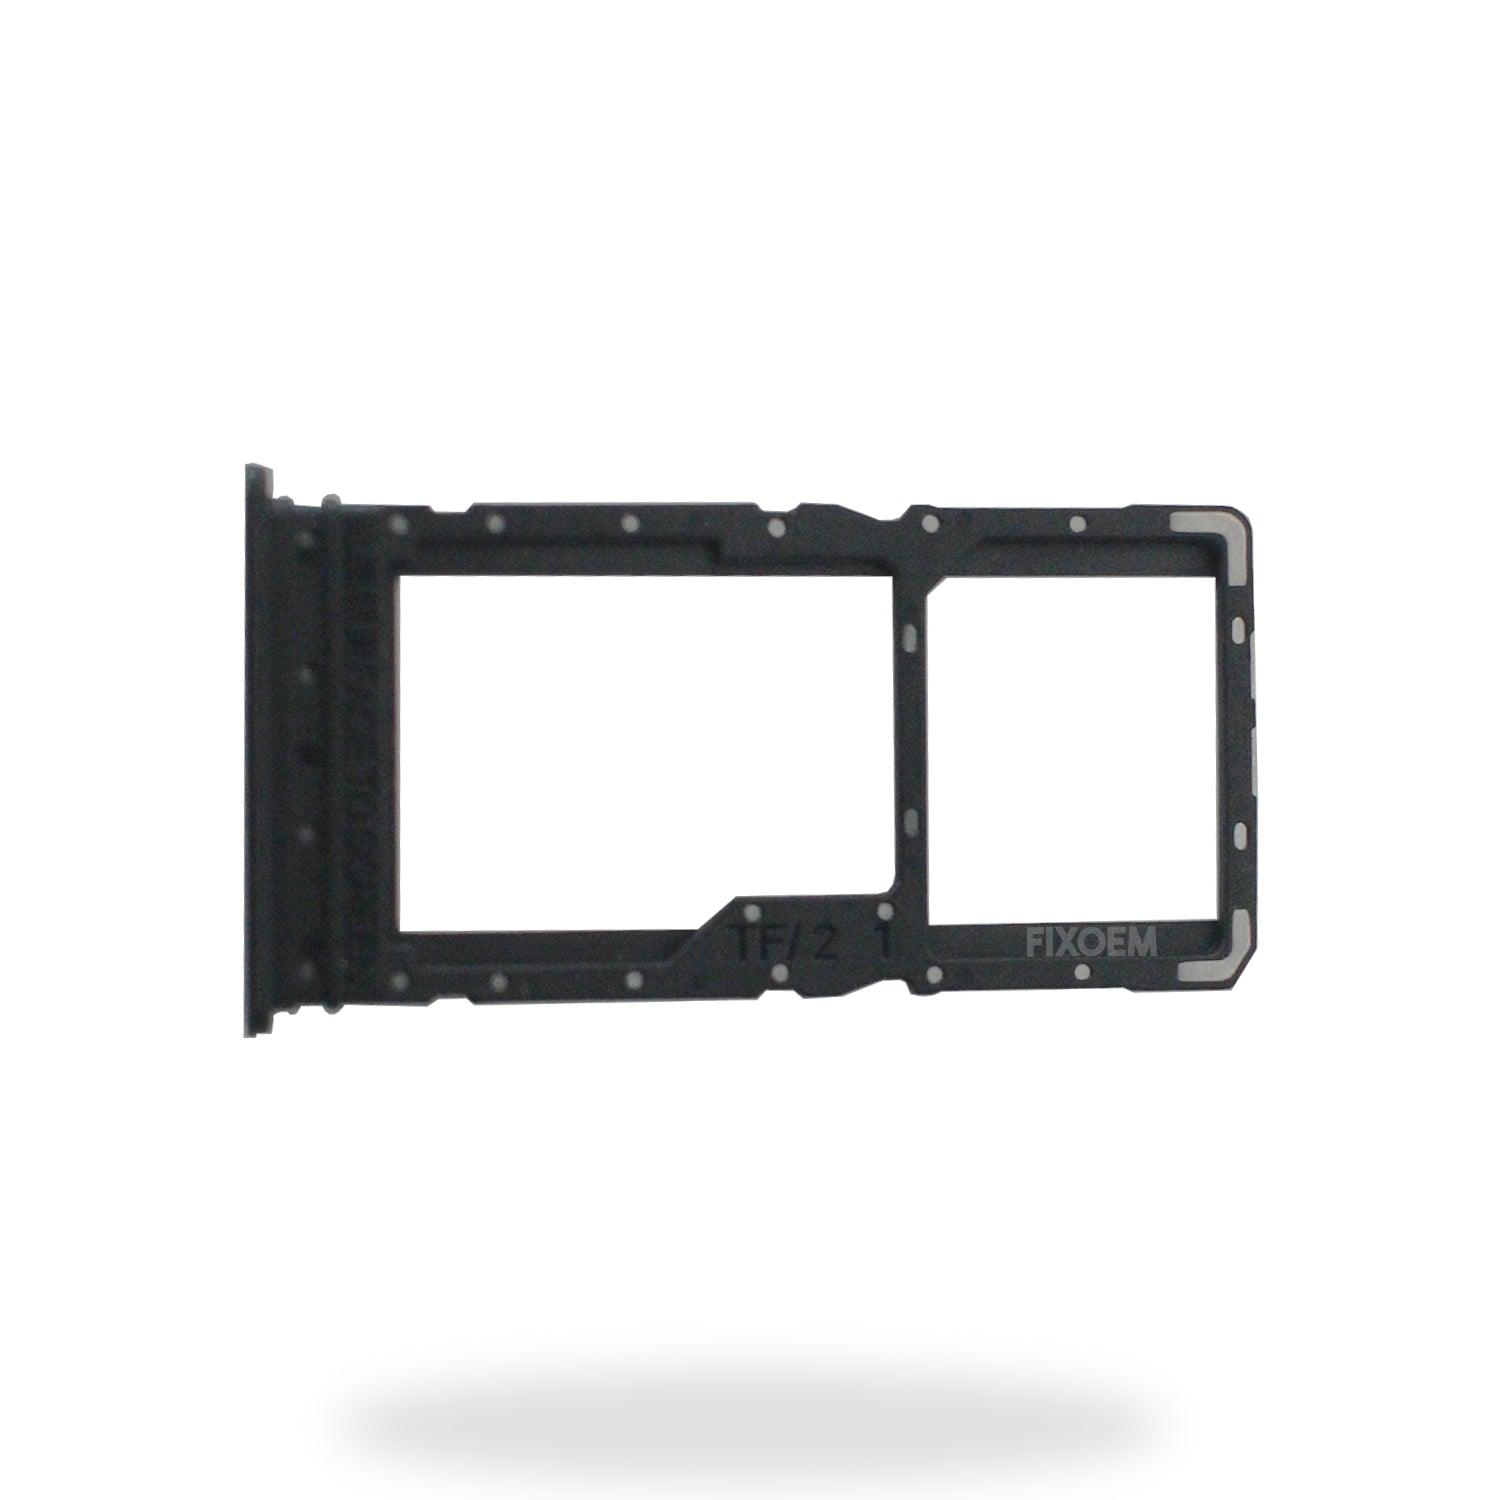 Charola Sim Xiaomi Redmi 12 a solo $ 30.00 Refaccion y puestos celulares, refurbish y microelectronica.- FixOEM